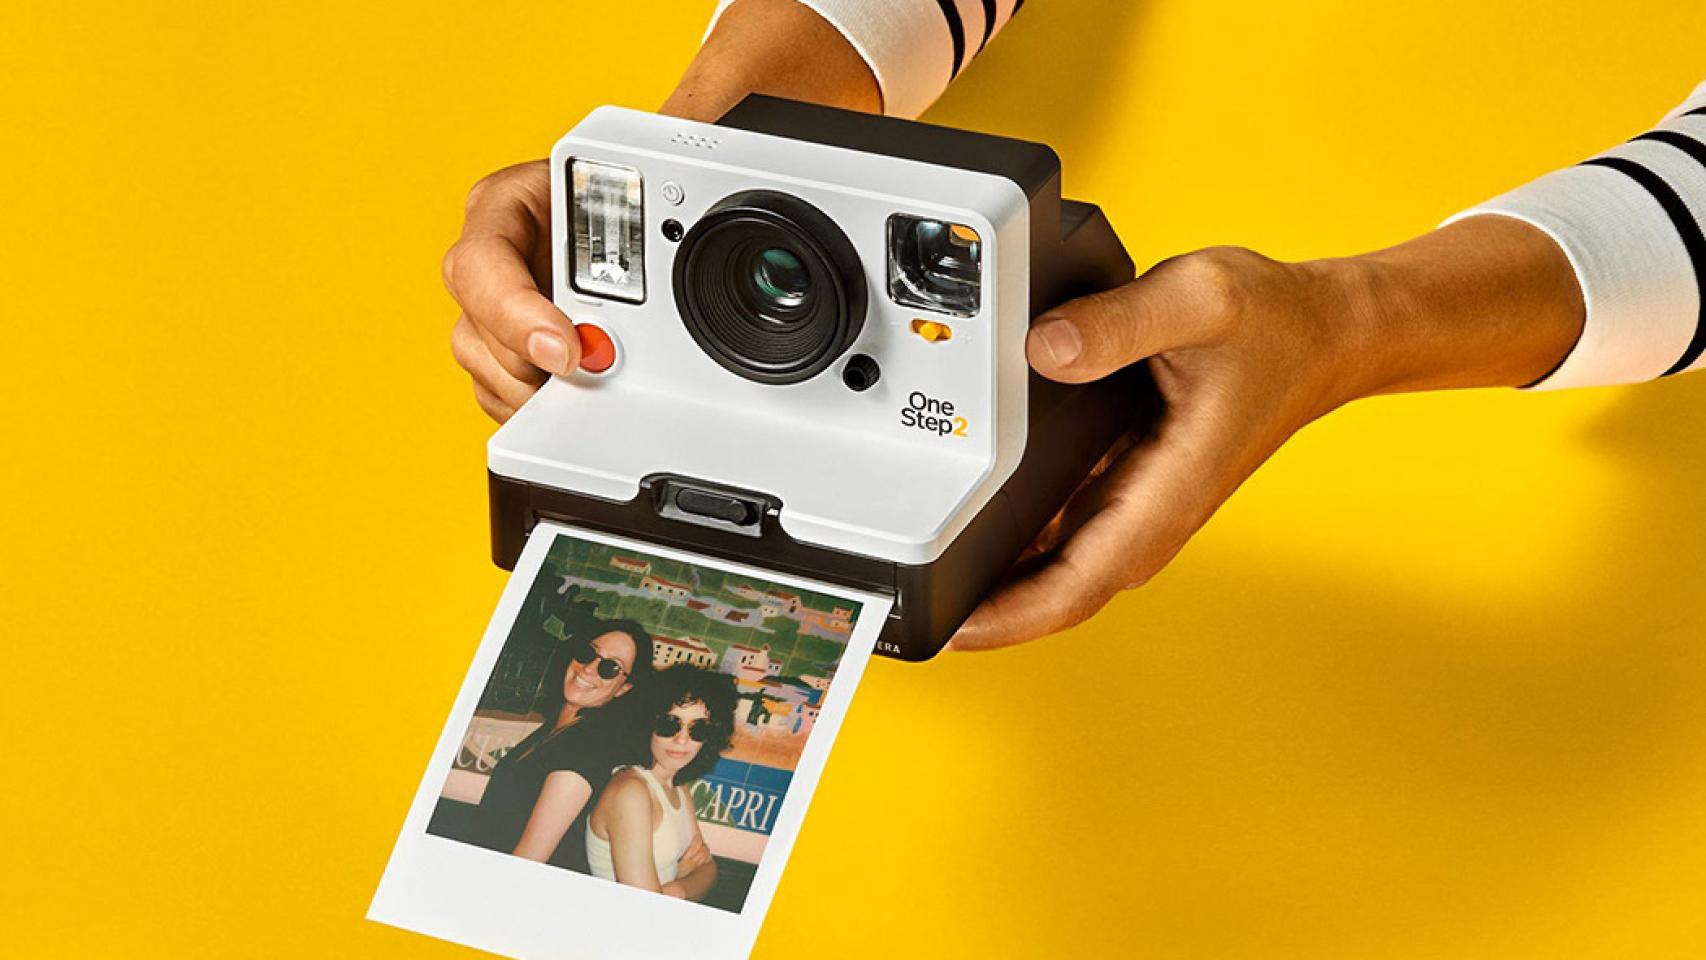 Injusticia Cúal Empuje hacia abajo Polaroid revive su cámara instantánea 10 años después